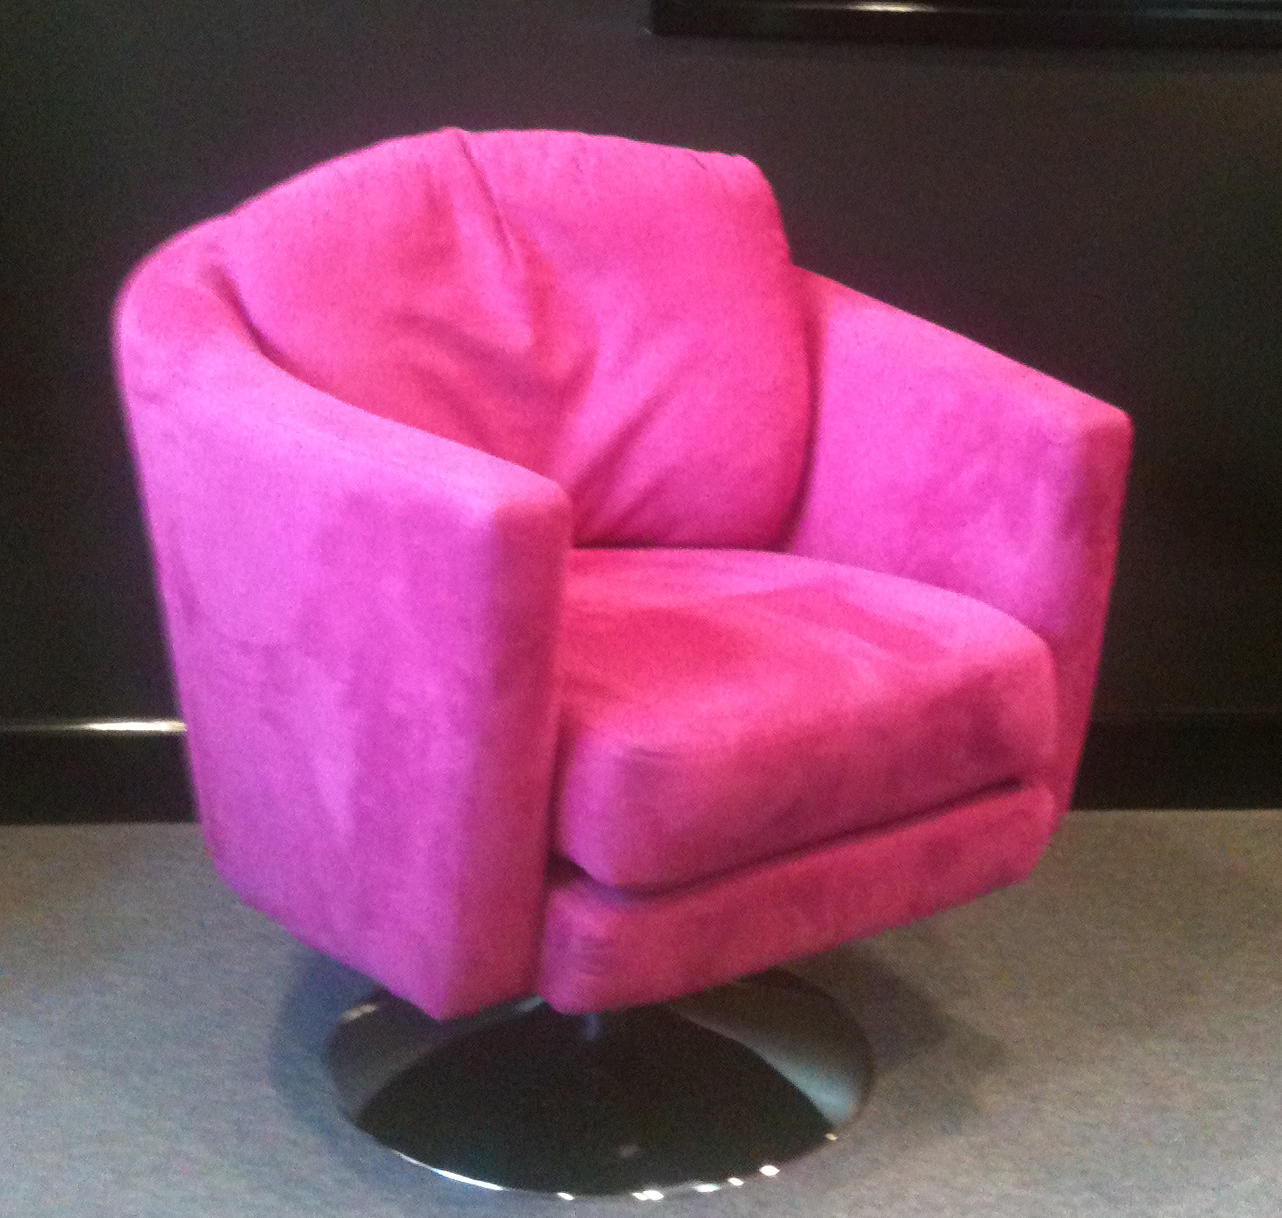 http://3.bp.blogspot.com/-XpS0nENzYaA/T8wQuqqRscI/AAAAAAAABE0/lhwAwsnfFnQ/s1600/The+Pink+Chair.JPG